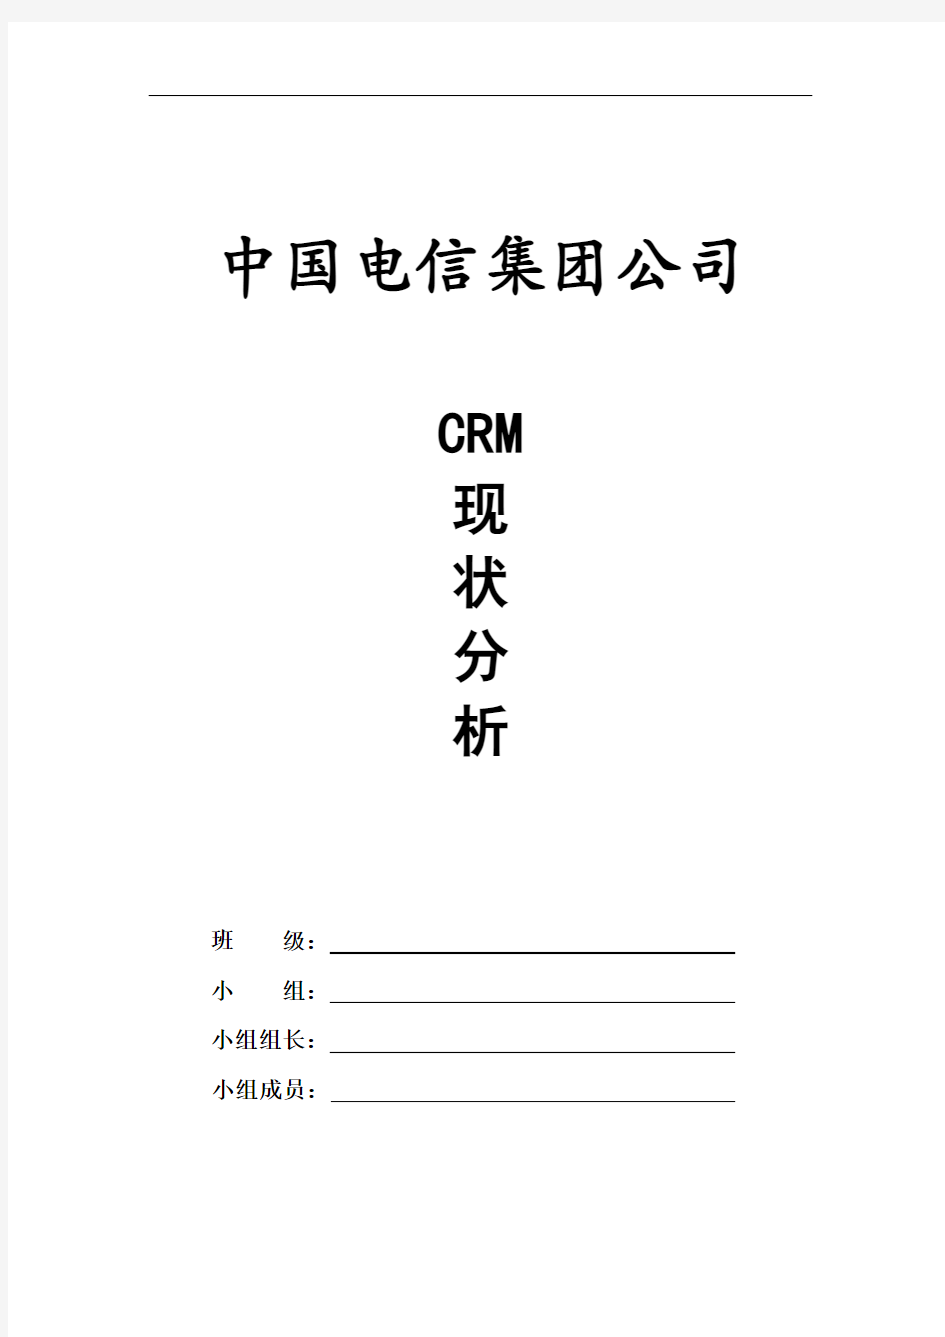 中国电信集团公司CEM分析